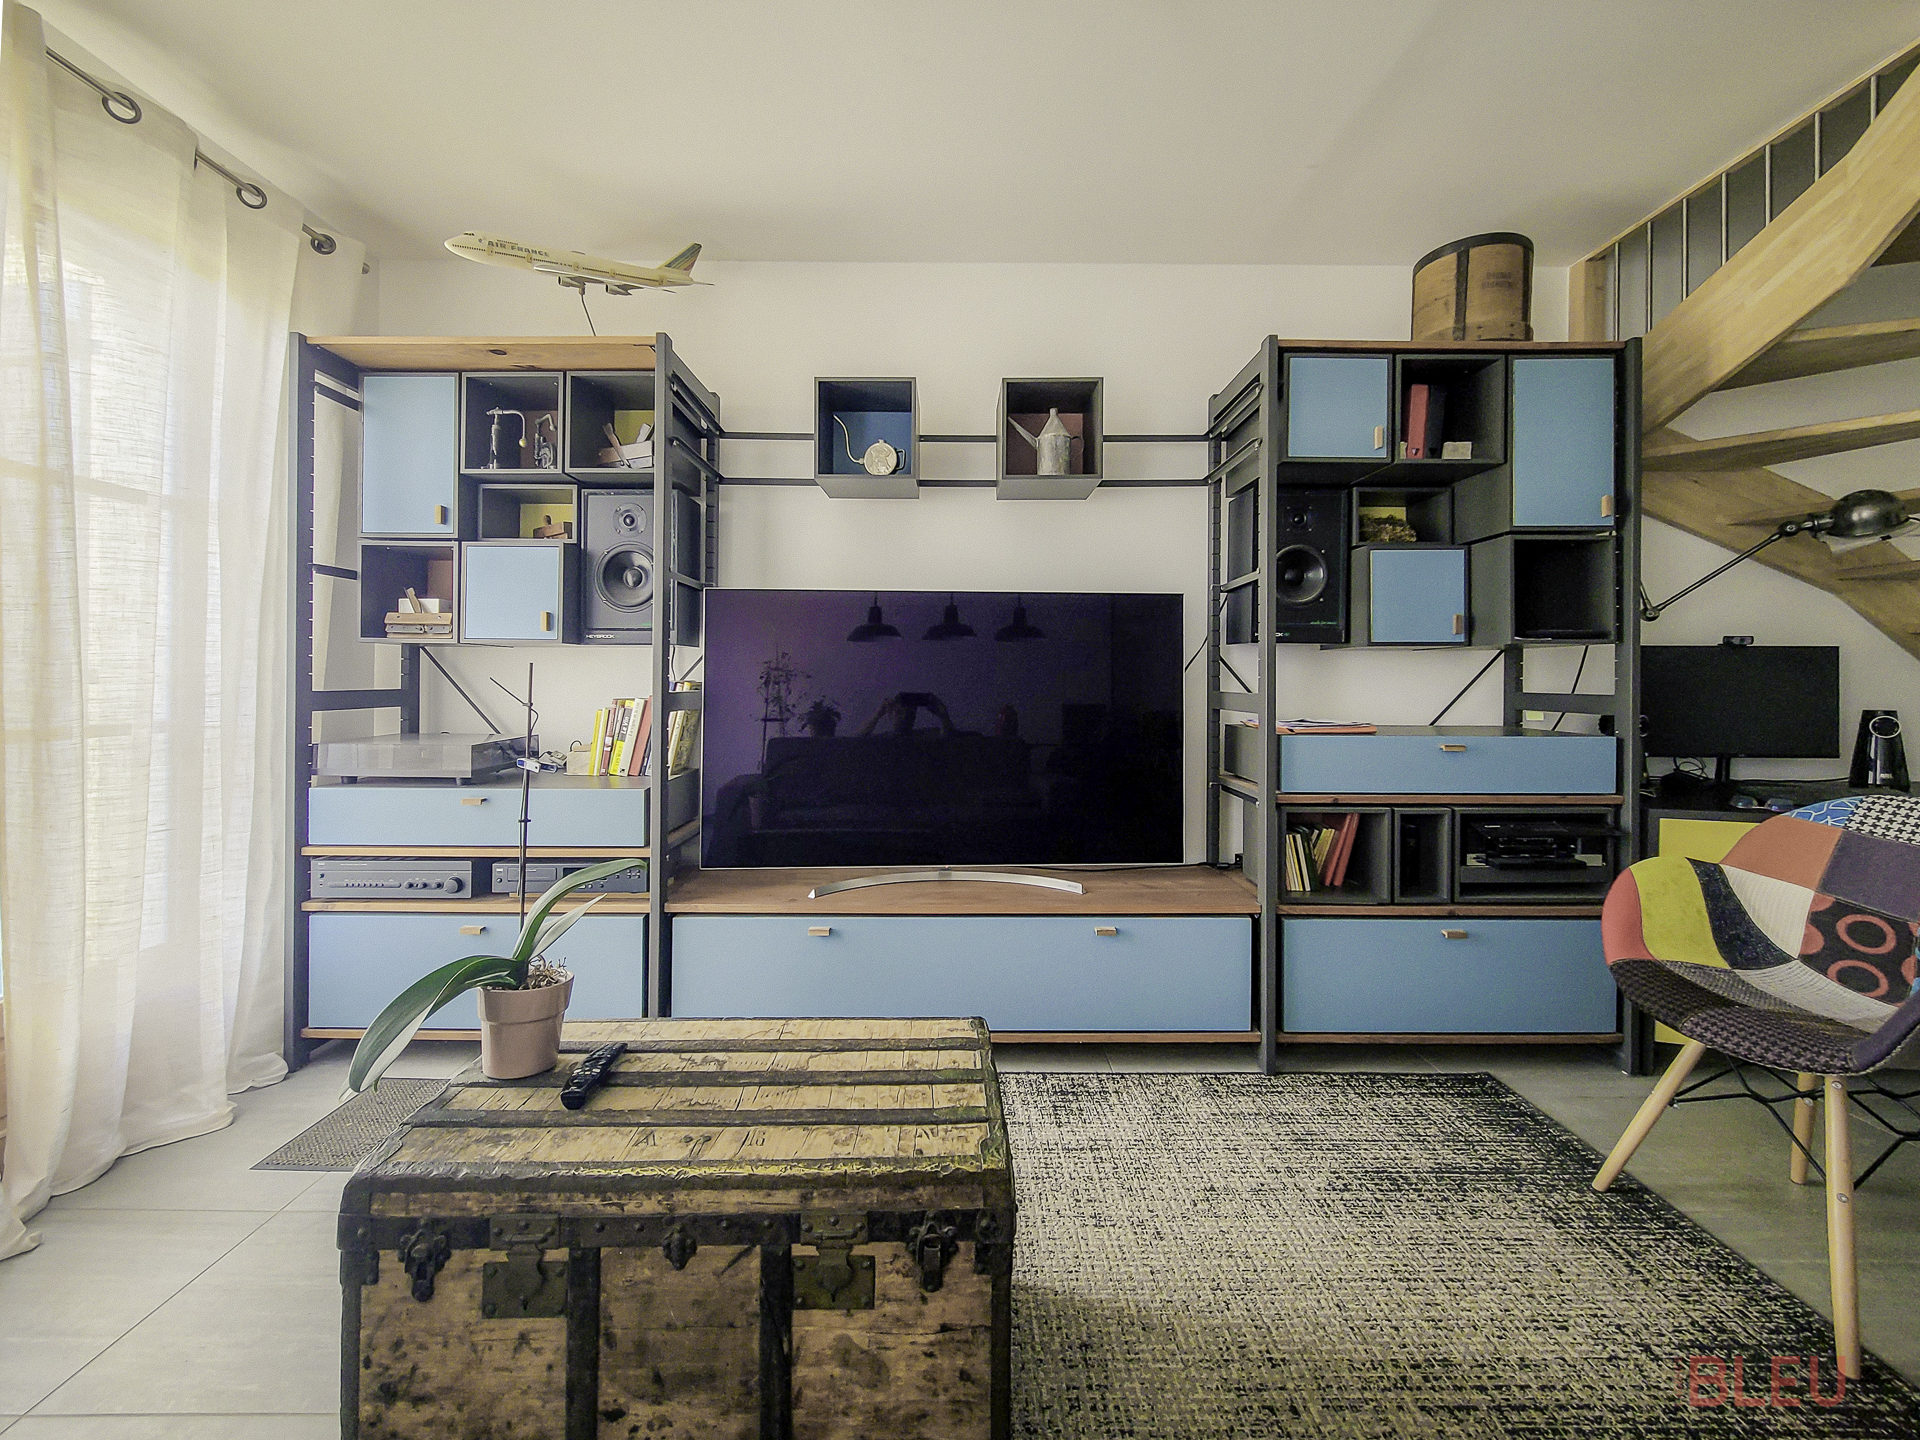 Espace de vie rénové avec design industriel et mobilier coloré par le cabinet d'architecture parisien, Agence BLEU.